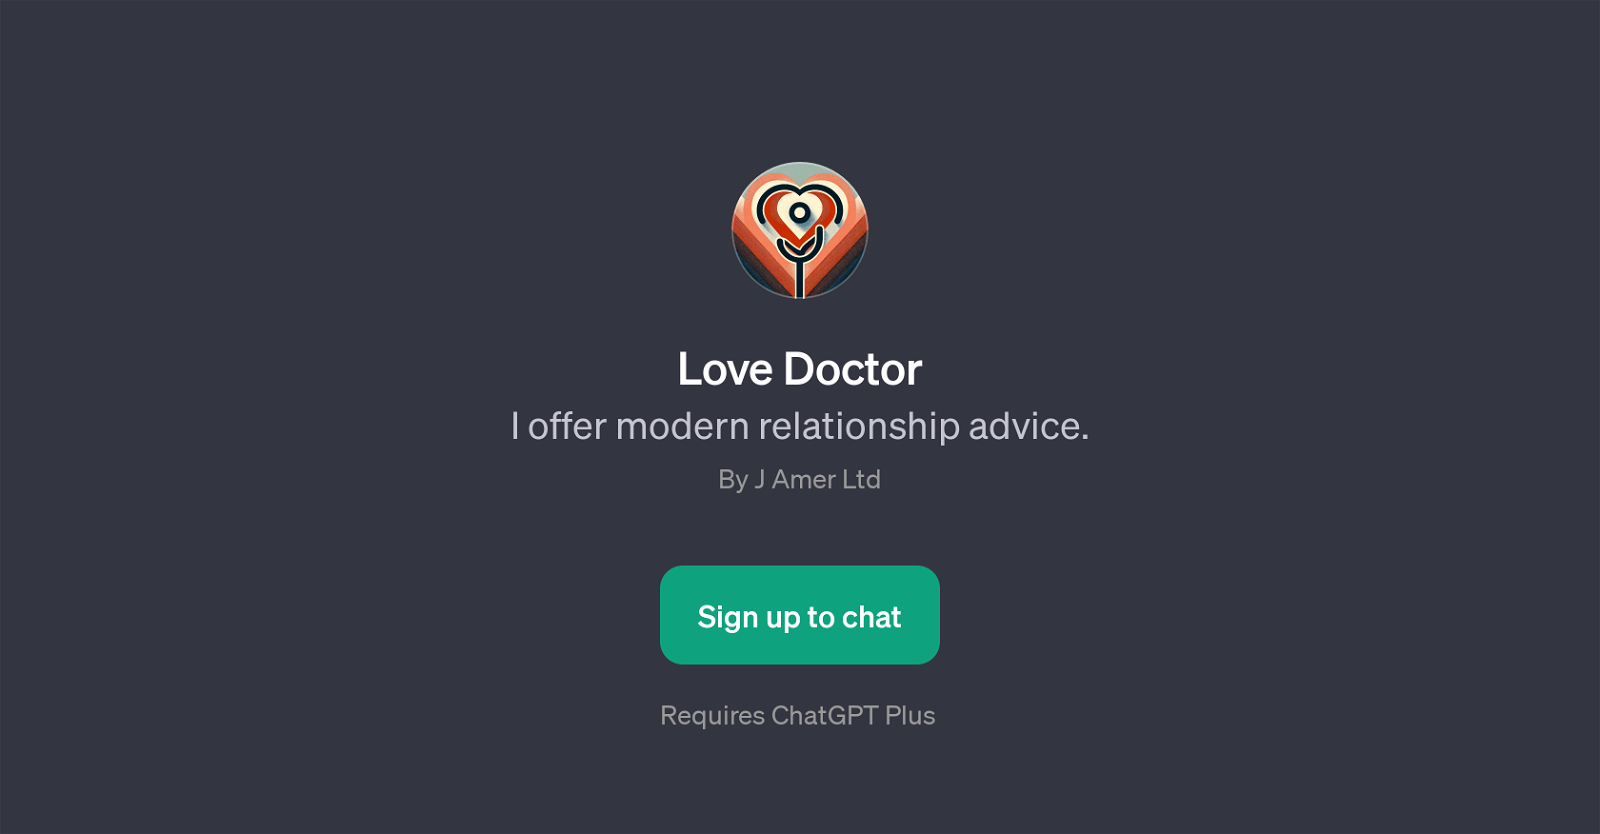 Love Doctor website